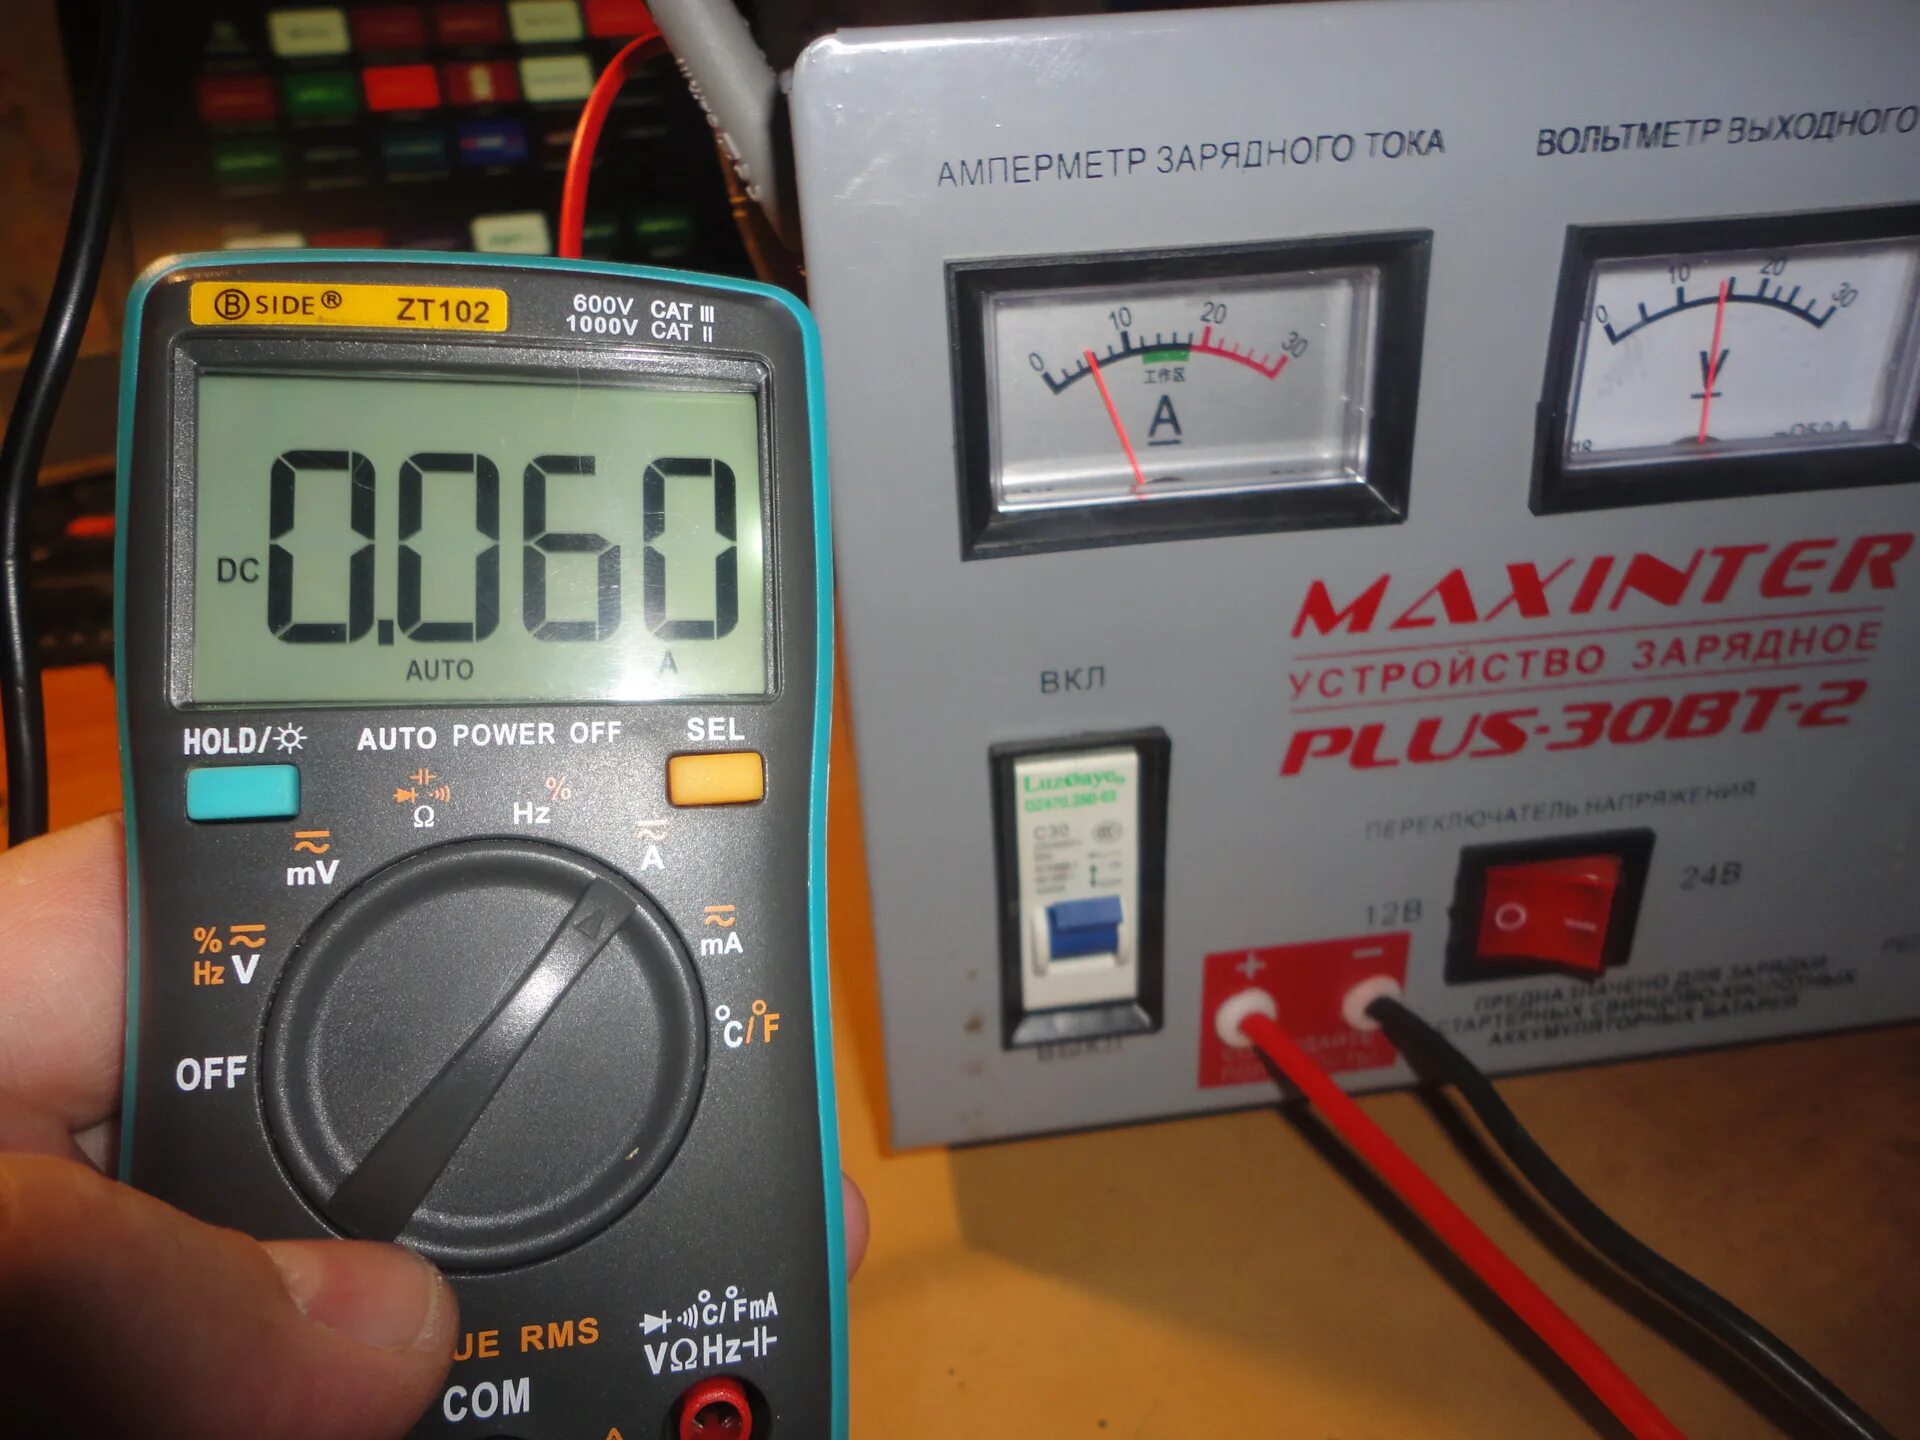 Прибор вт 30. Maxinter Plus-30bt-2. Амперметр зарядного тока Maxinter Plus 30. Зарядное устройство Maxinter Plus-30 BT-2. Maxinter Plus-30 BT-2 Power, 12в/24в.